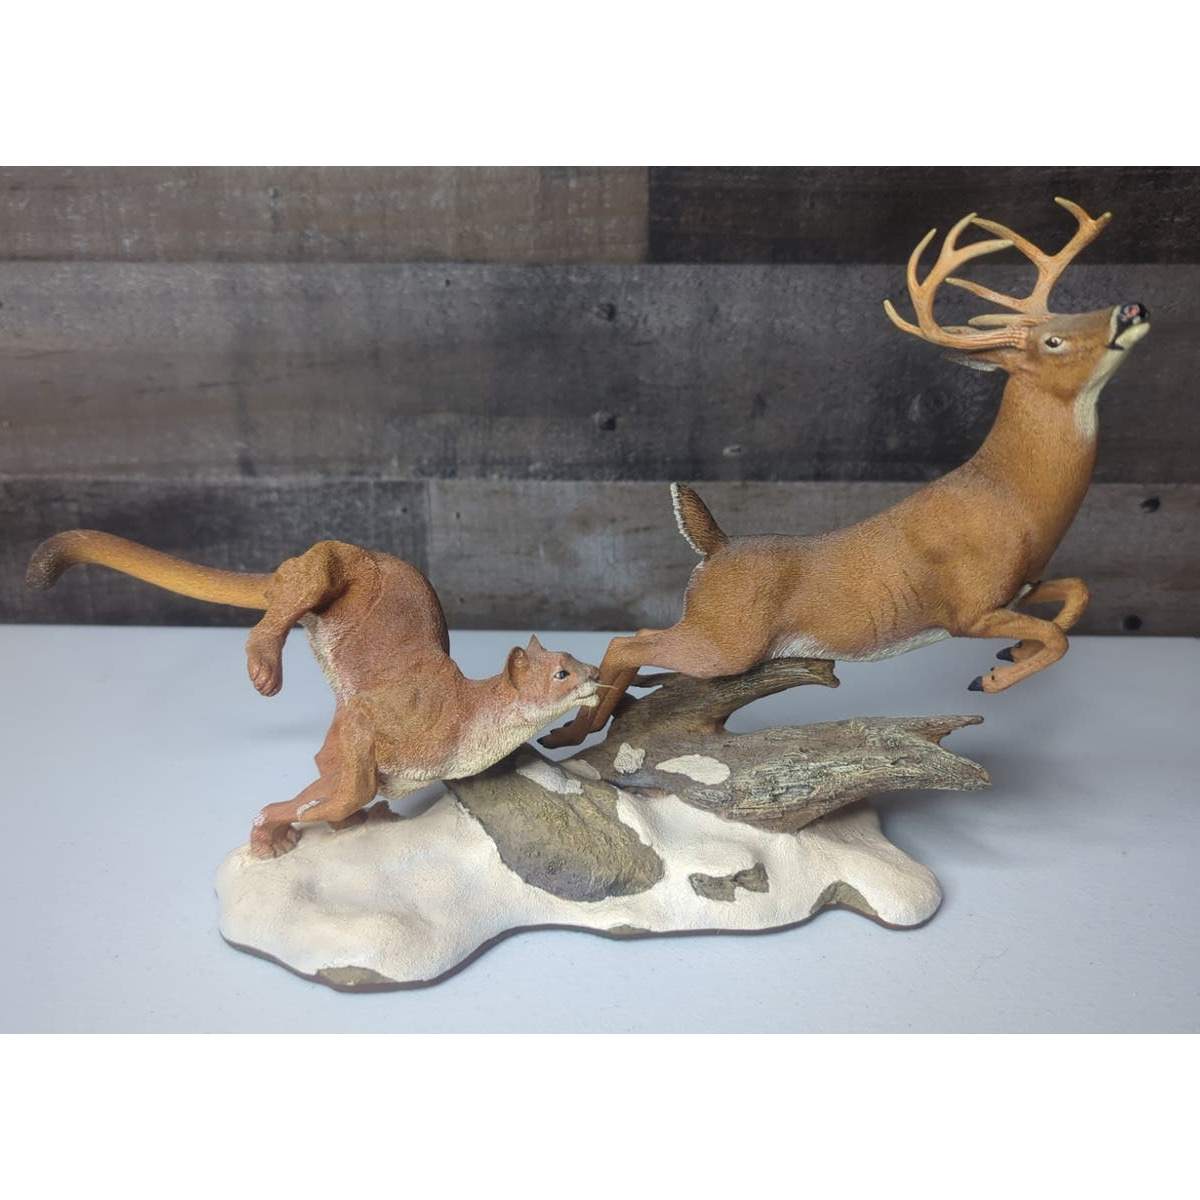 Vintage Danbury Mint Nick Bibby Hot Pursuit Sculpture Mountain Lion with Deer